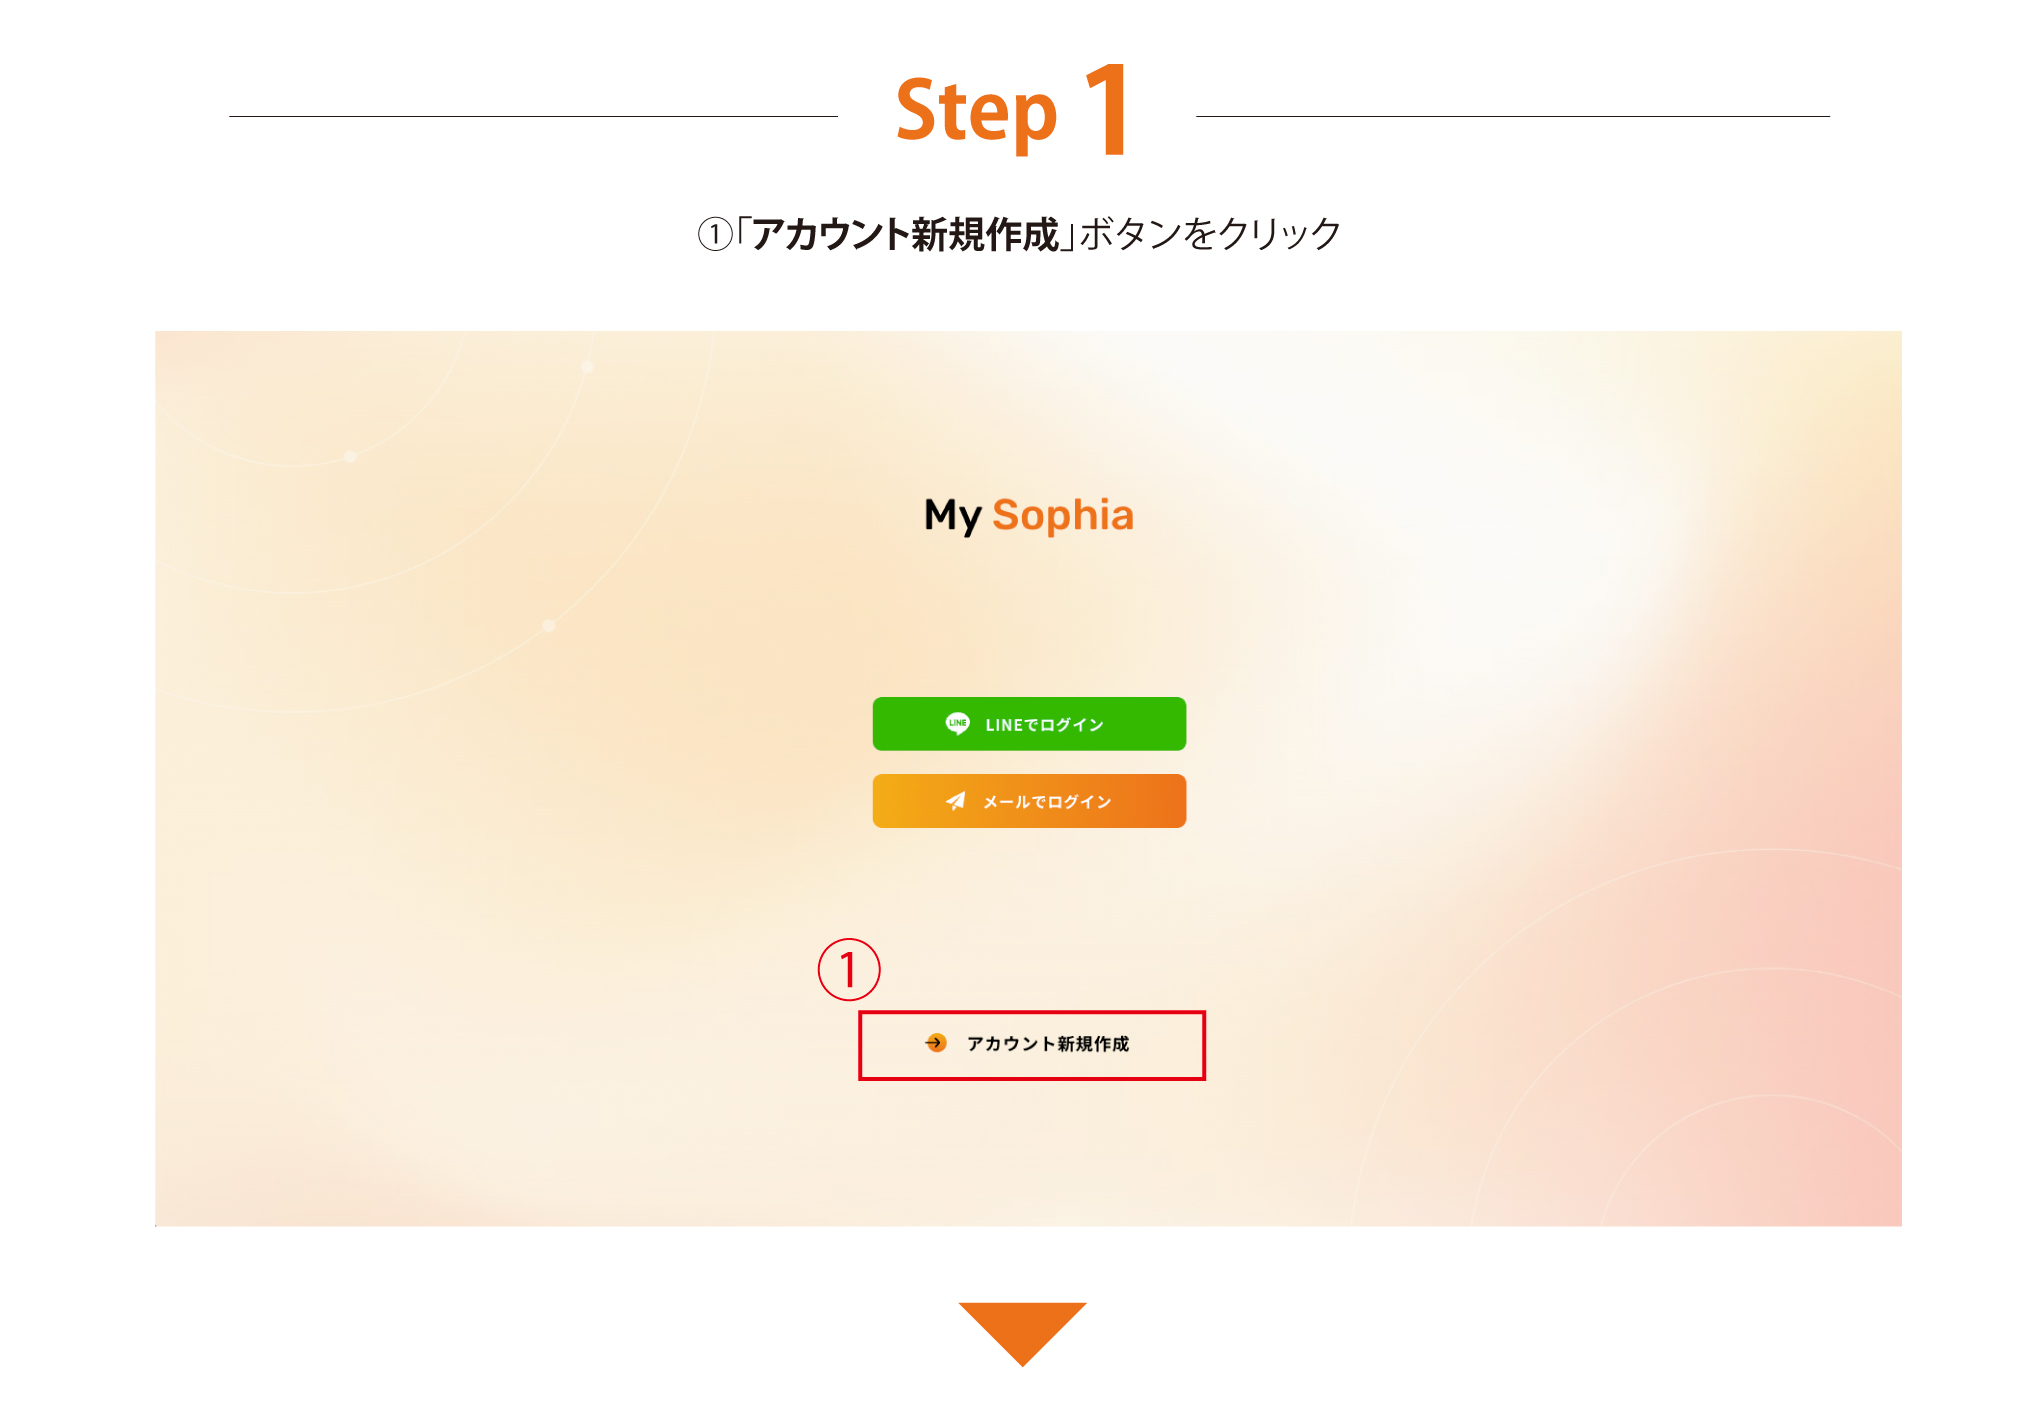 Step 1 「アカウント新規作成ボタン」をクリック